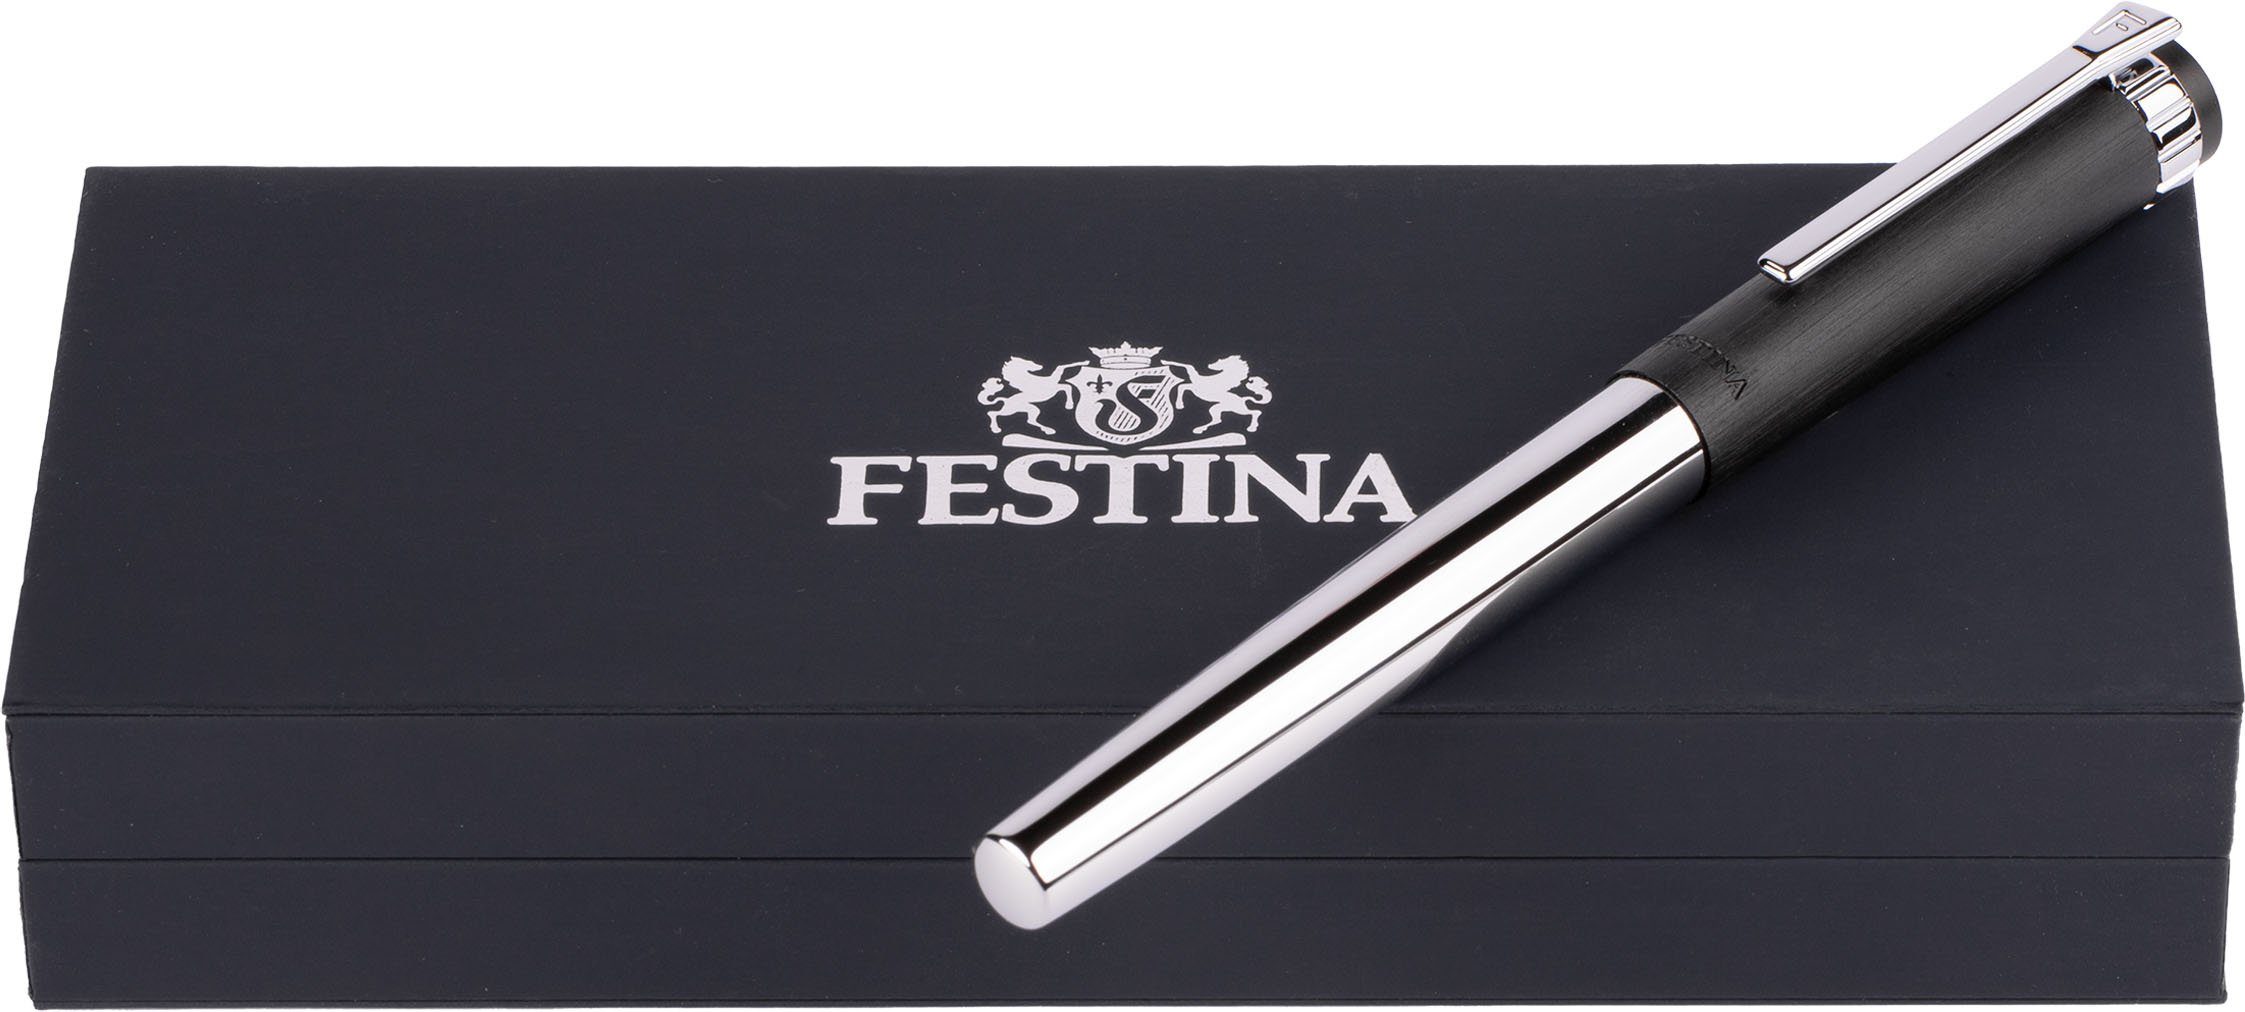 Festina ideal Etui, als FWS5109/A, Prestige, auch inklusive Geschenk Tintenroller